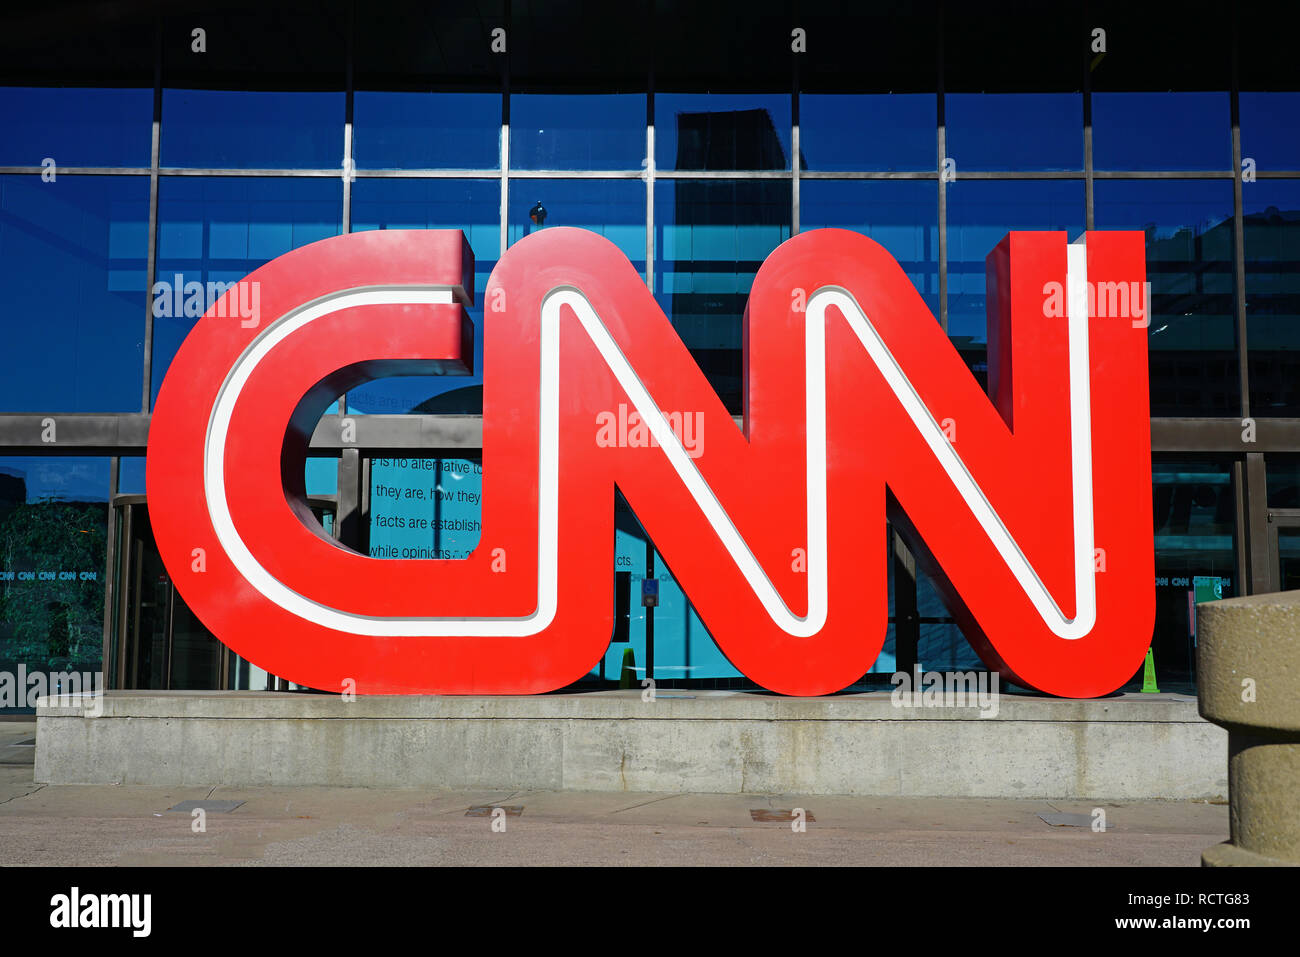 ATLANTA, GA - Vue de la CNN Center, le siège social international de la CNN news réseau située dans le centre-ville d'Atlanta, Géorgie. Banque D'Images